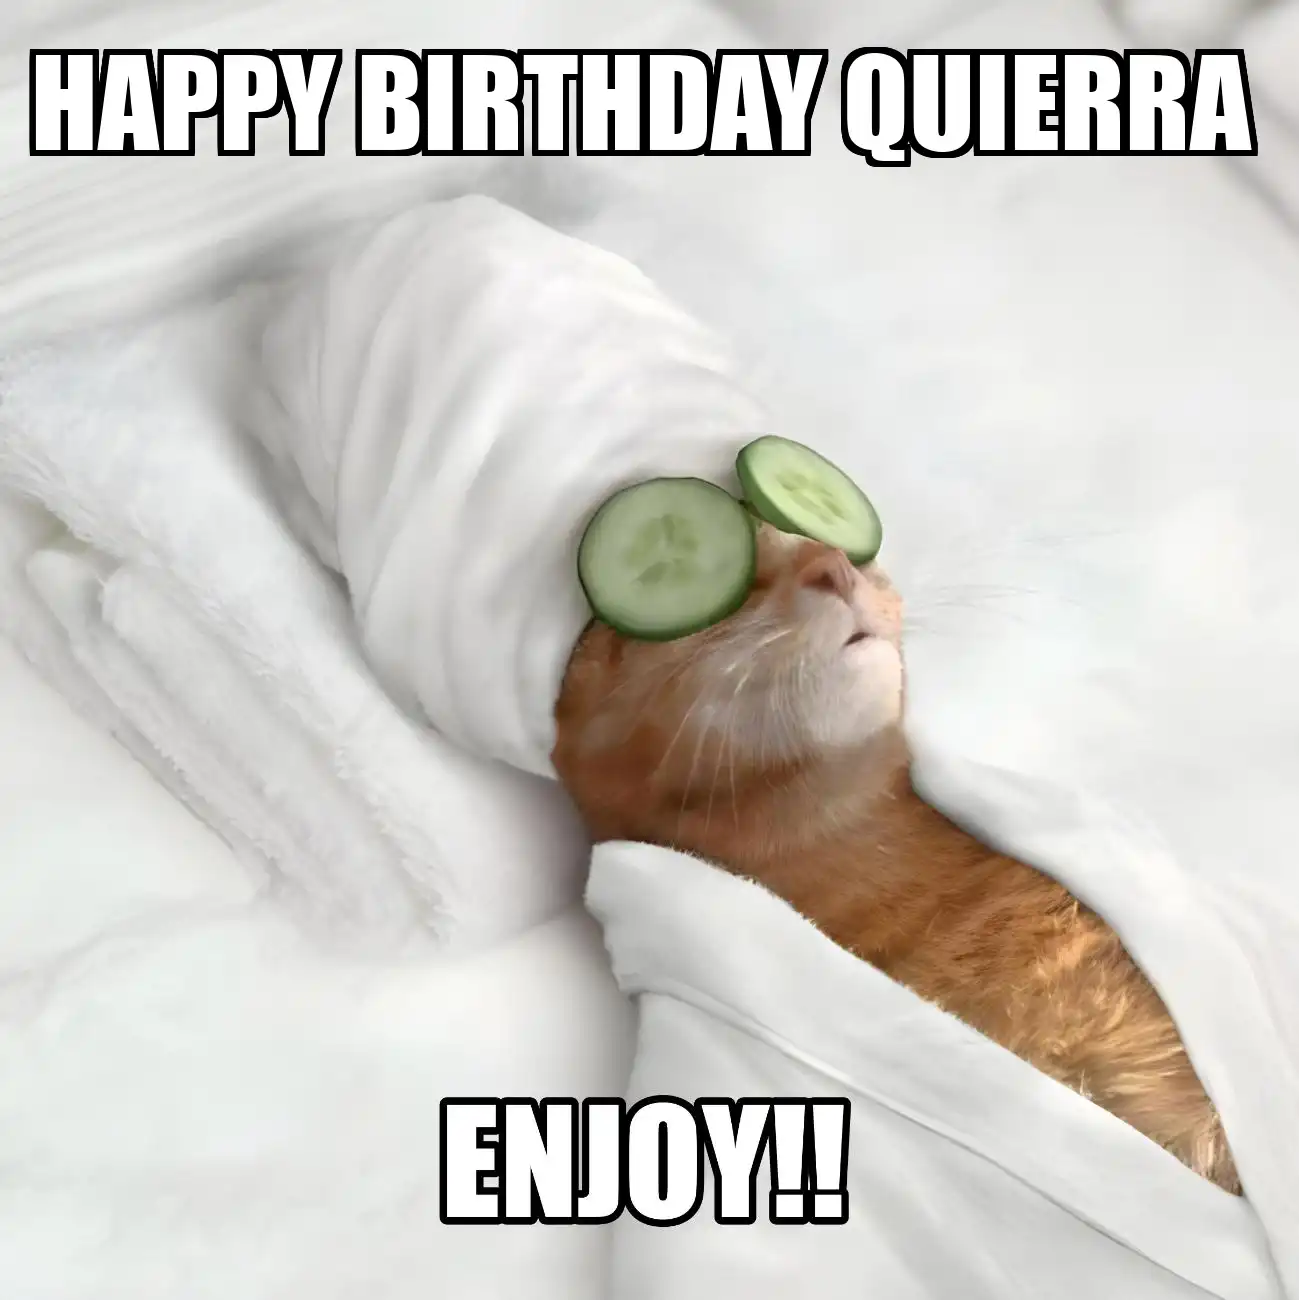 Happy Birthday Quierra Enjoy Cat Meme